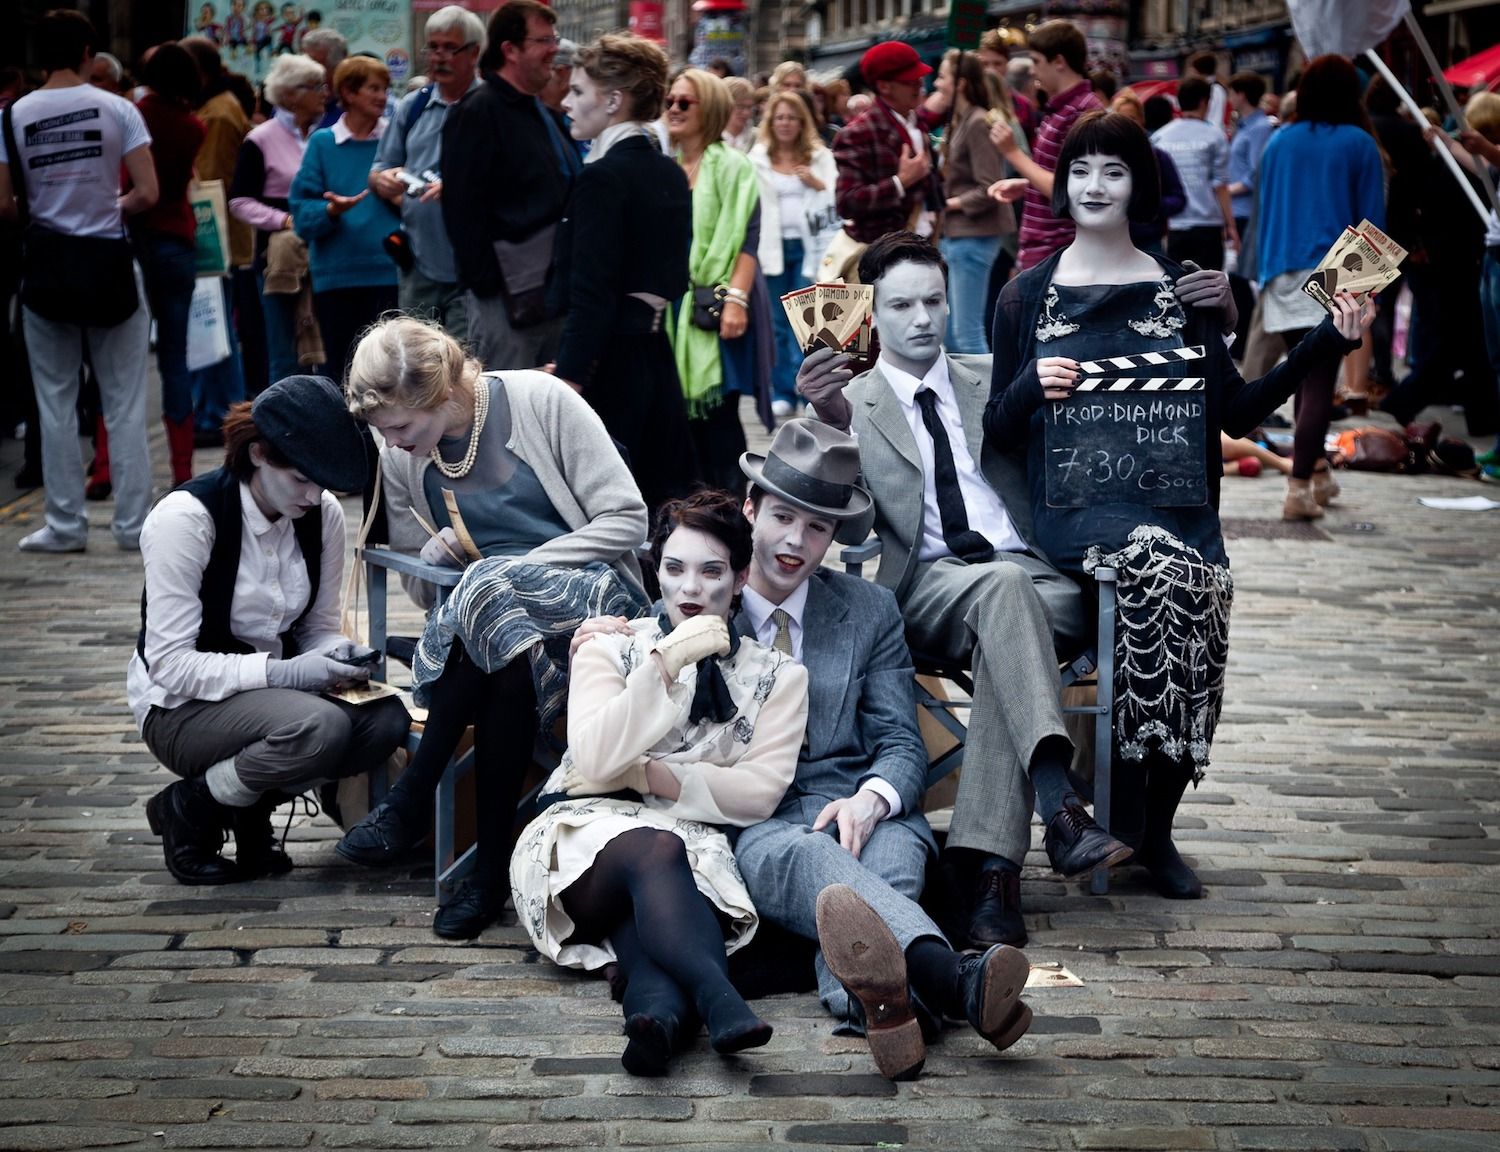 Street performers at Edinburgh Fringe Festival 